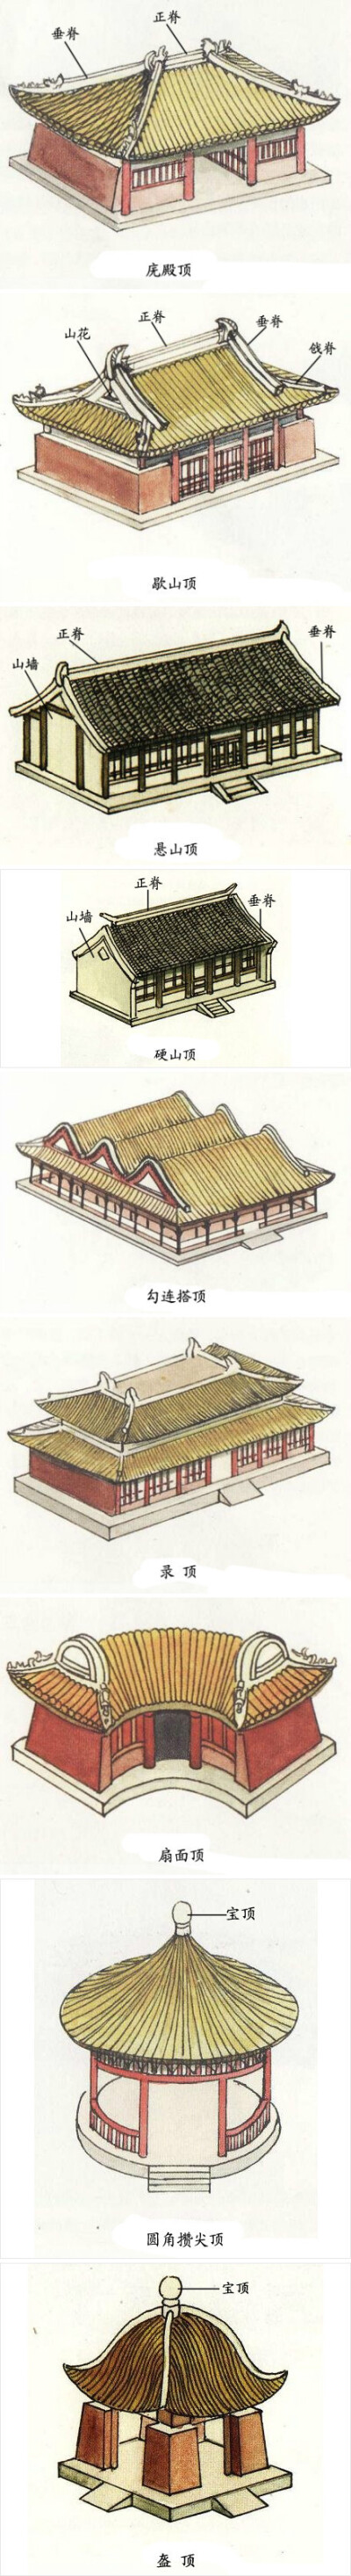 【中国古建筑屋顶式样】